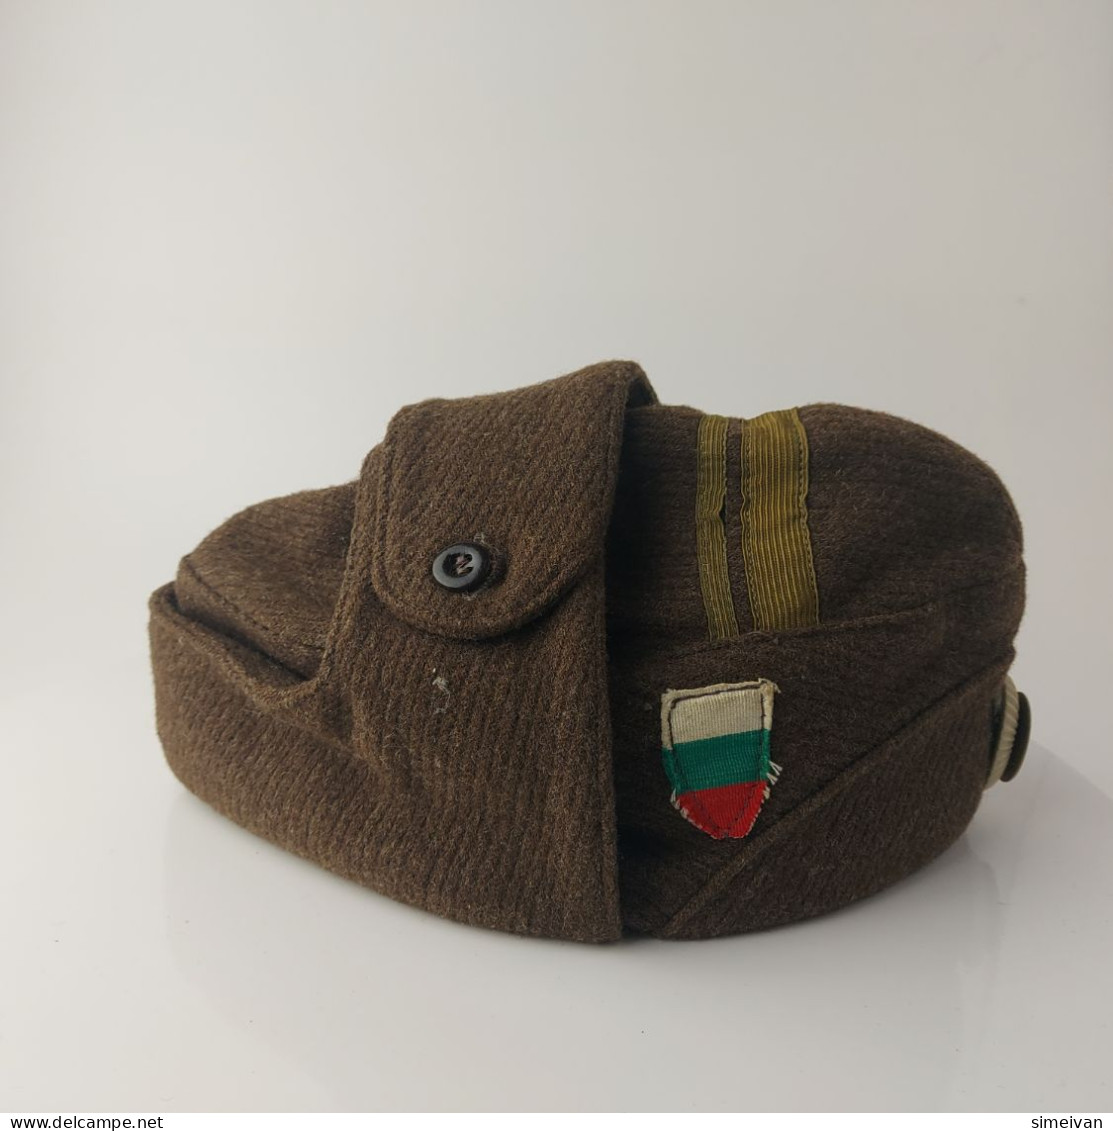 Vintage Communist Era Bulgarian Military Officer Winter Uniform Hat Cap #5544 - Antike Werkzeuge